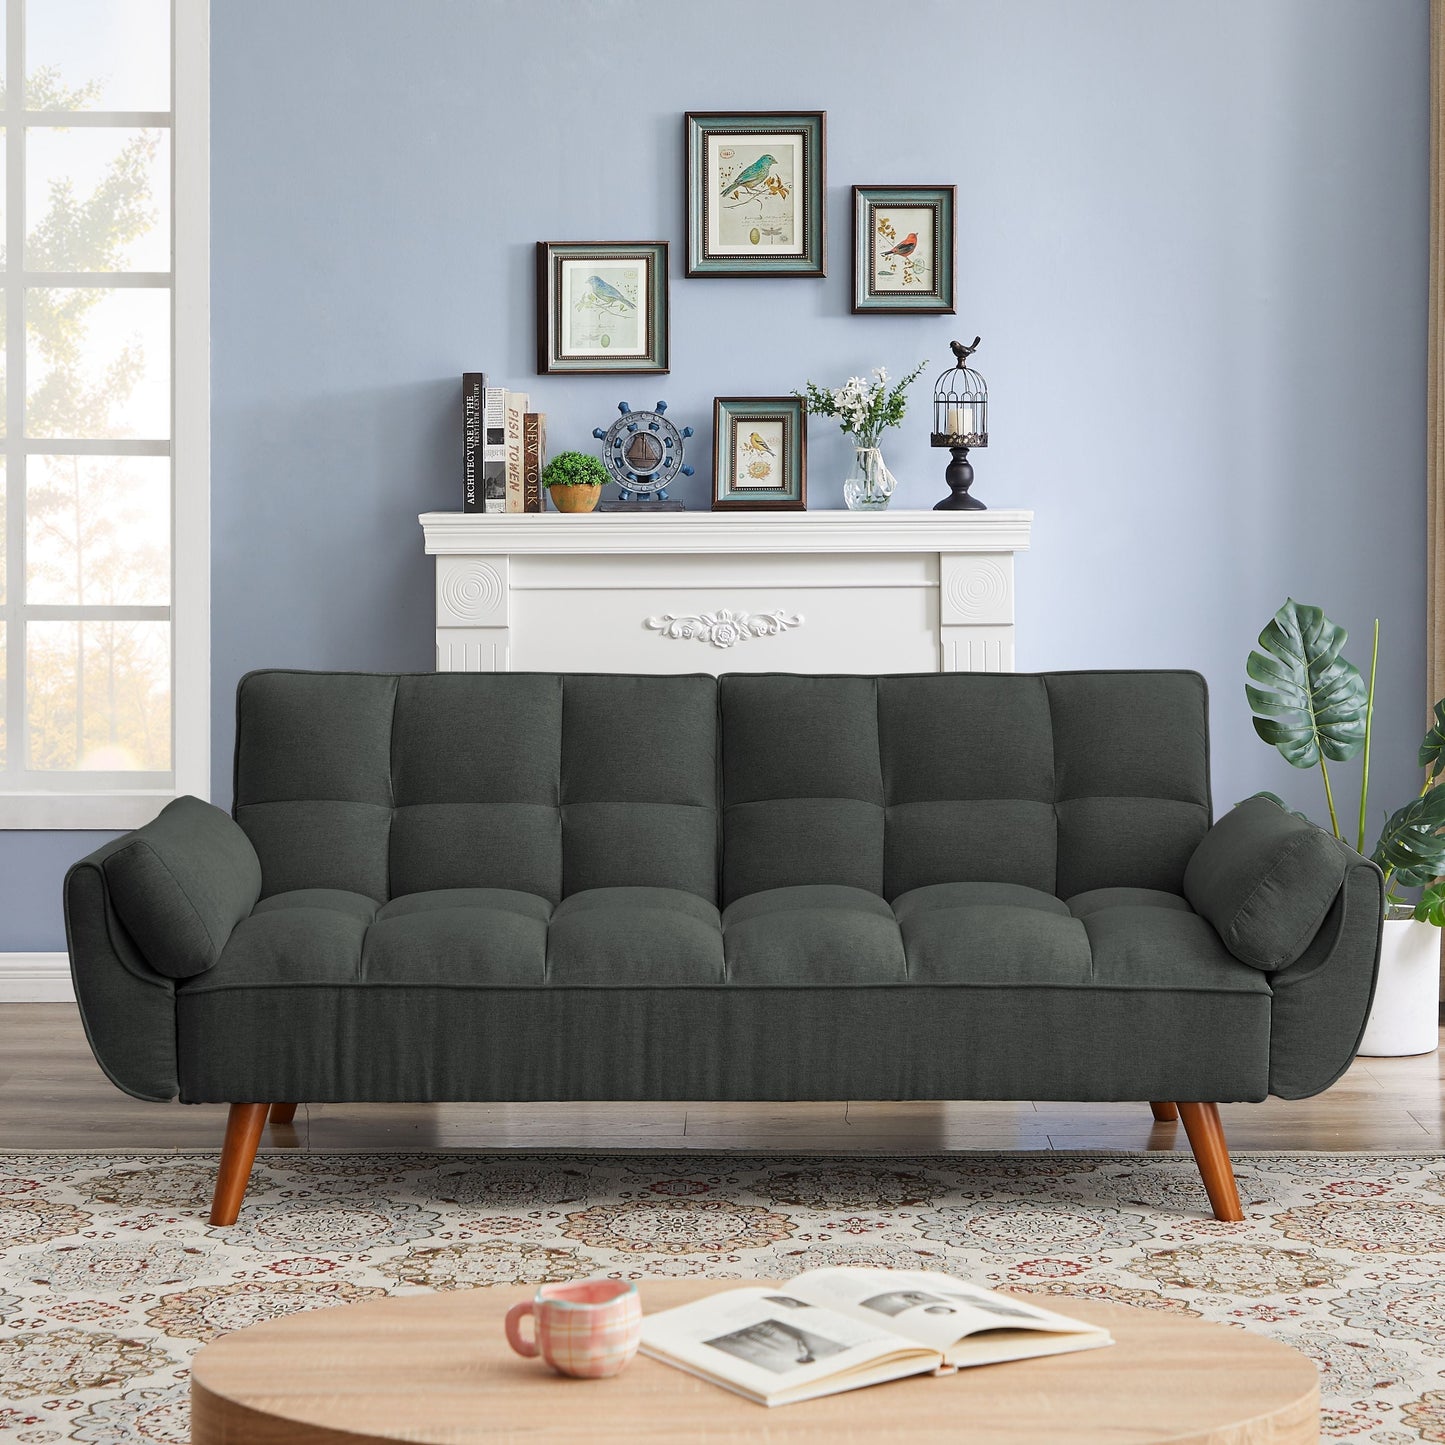 New Design Linen Sofa Furniture Adjustable Backrest